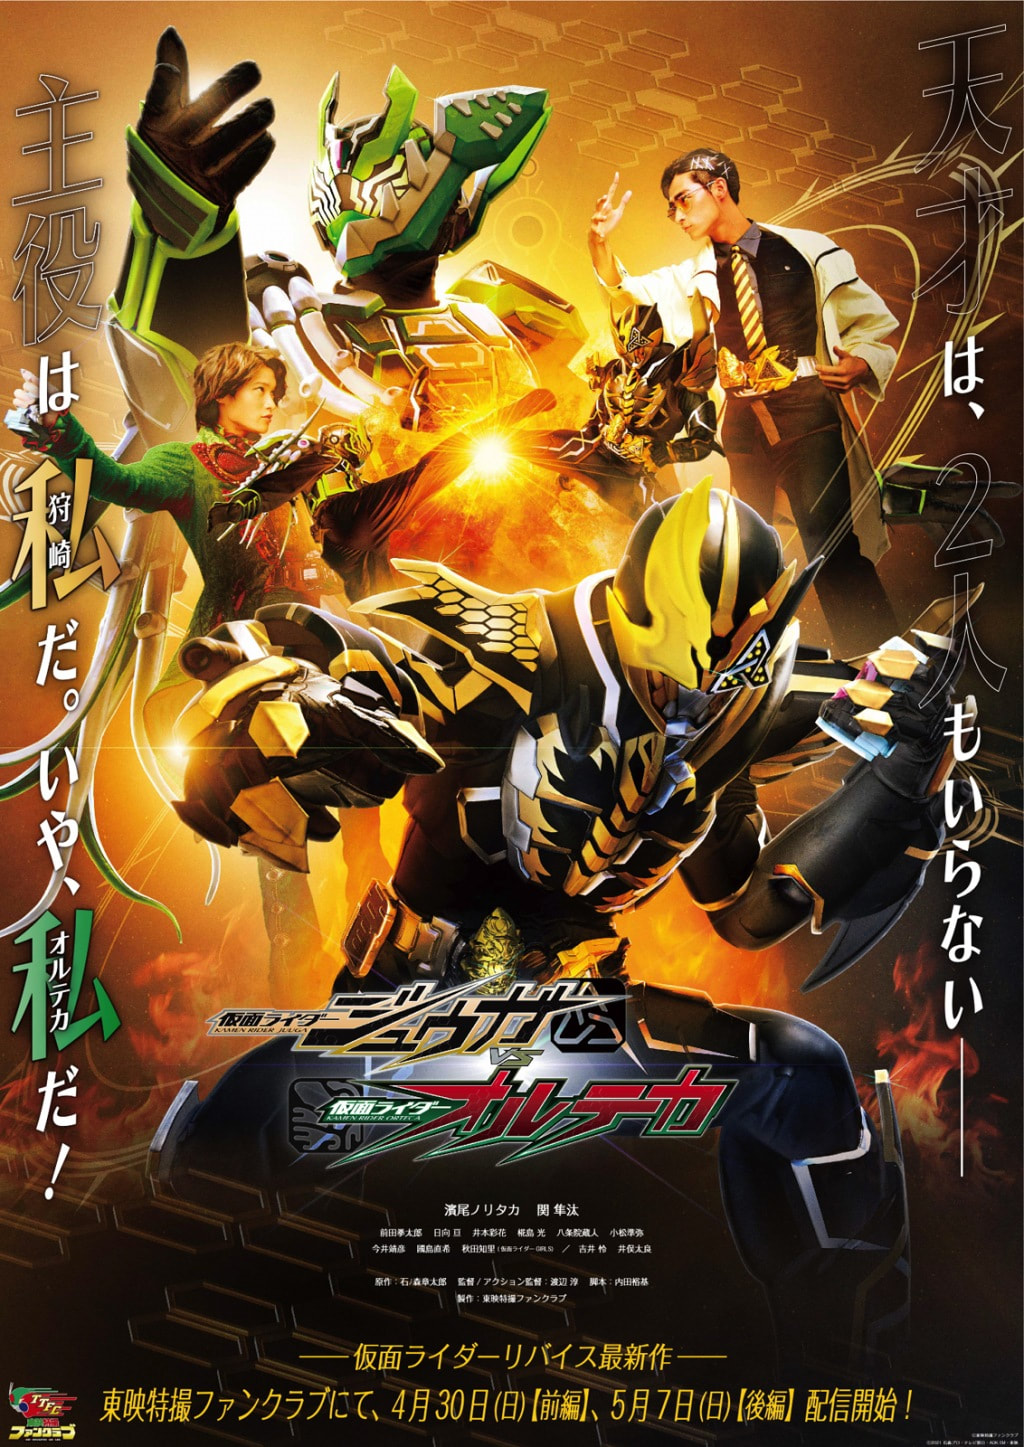 Kamen Rider Juuga vs Kamen Rider Orteca